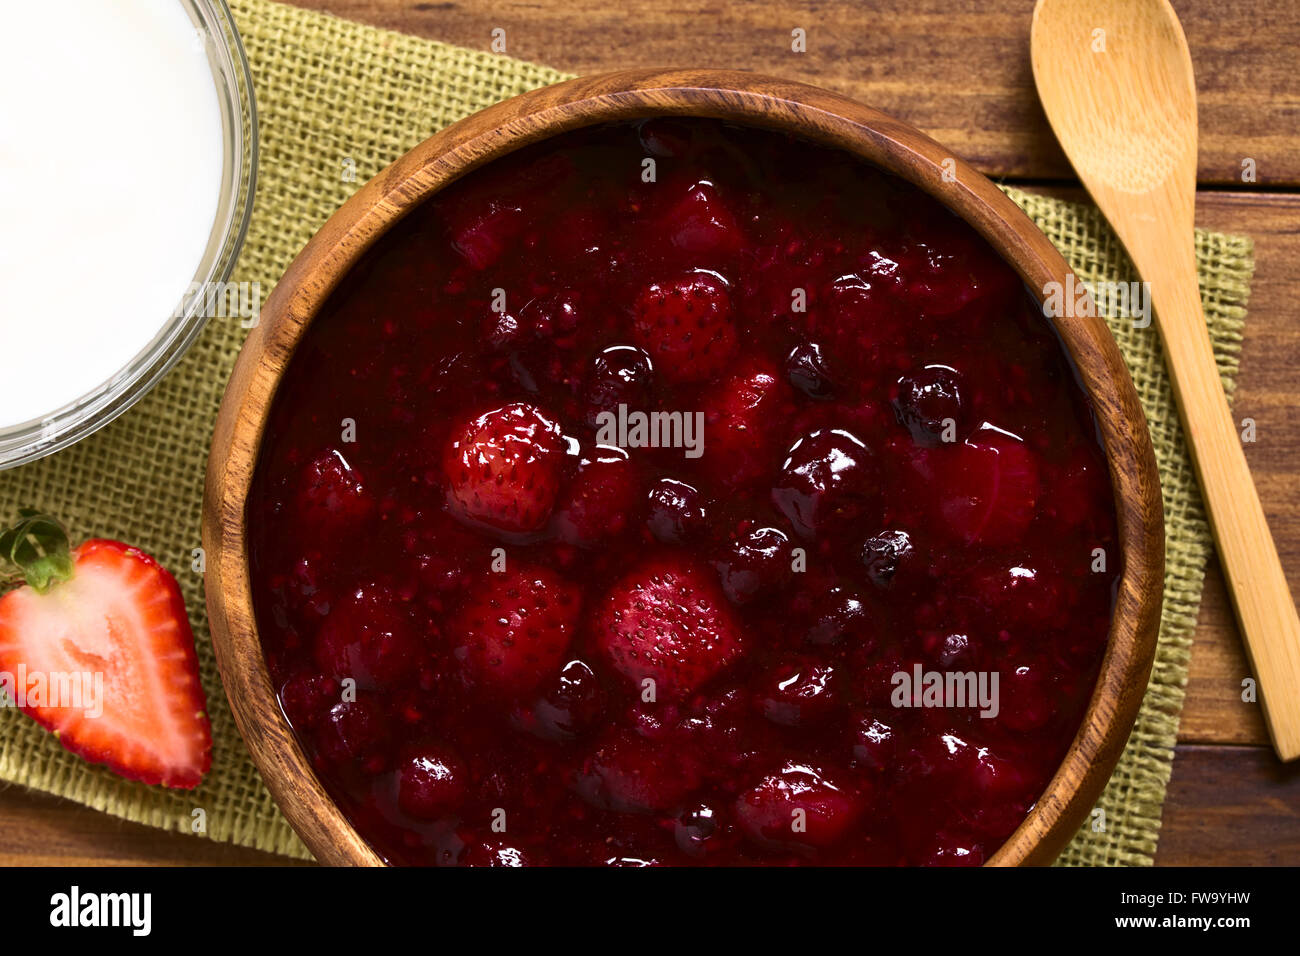 Rote Gruetze (allemand) de gruau rouge red berry pudding à base de fraise, de bleuet, de framboise et de groseille rouge Banque D'Images